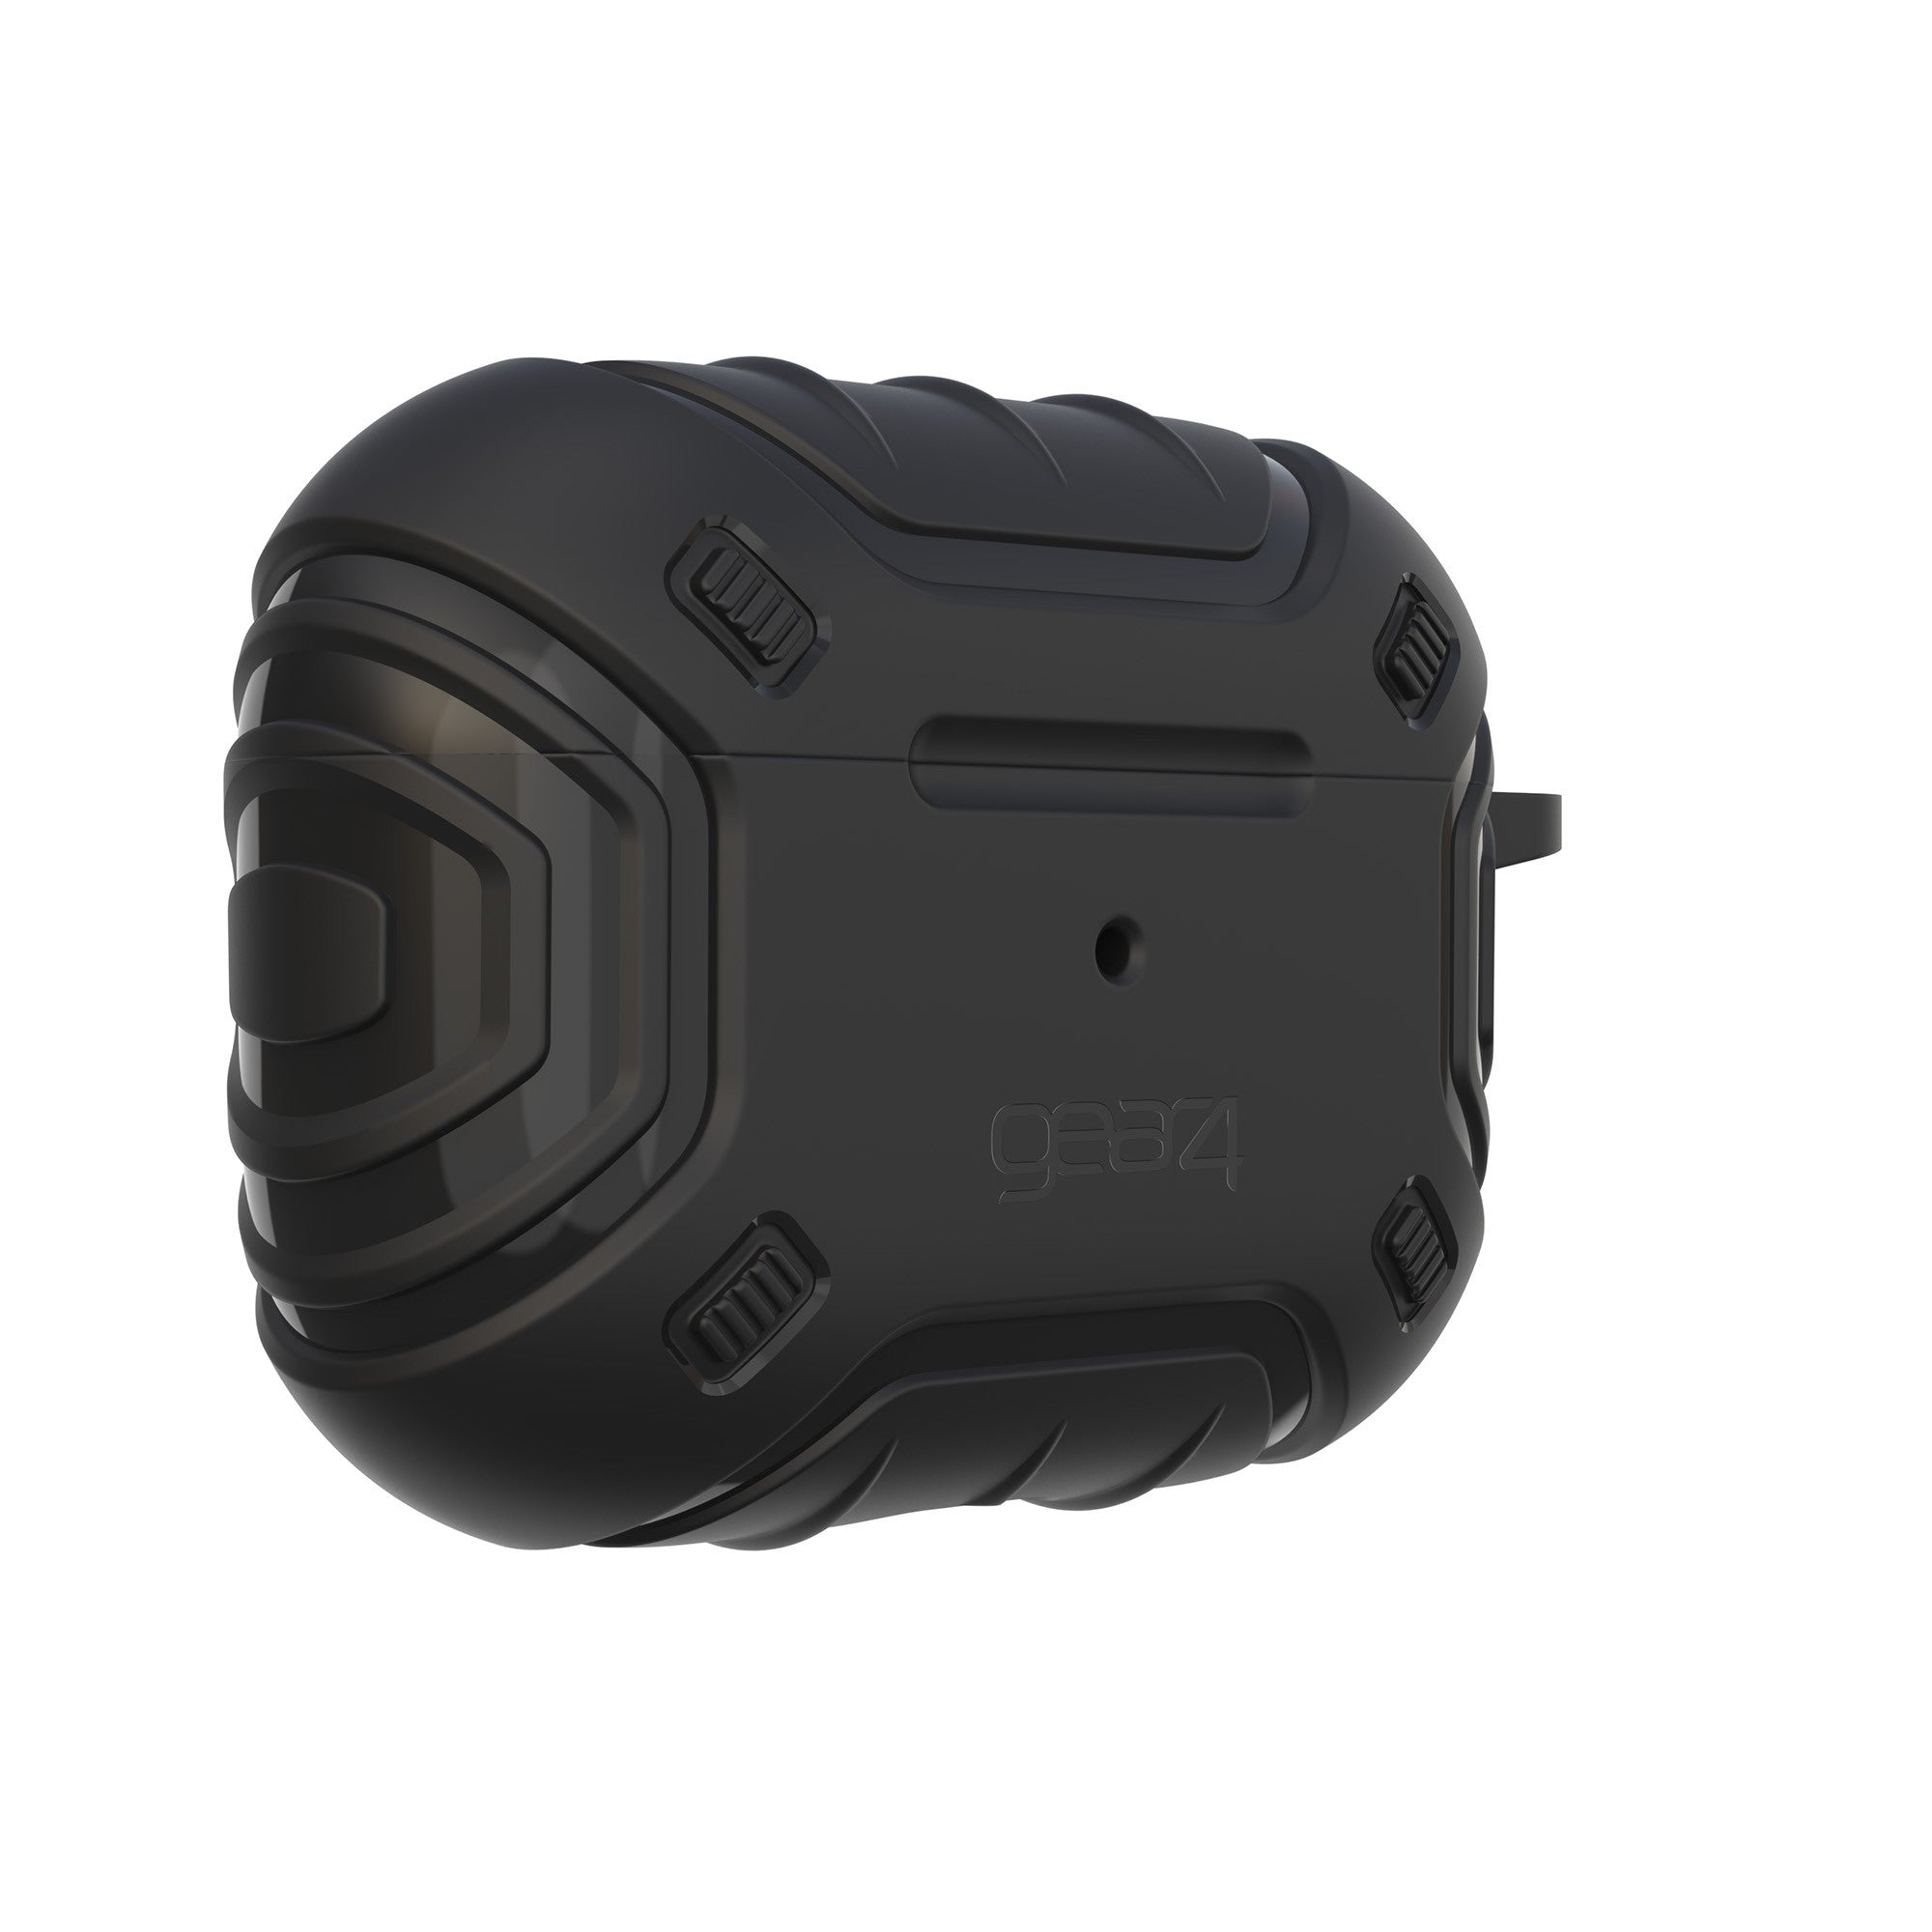 Airpods Pro Gear4 Apollo Snap Case - Black - 15-10830